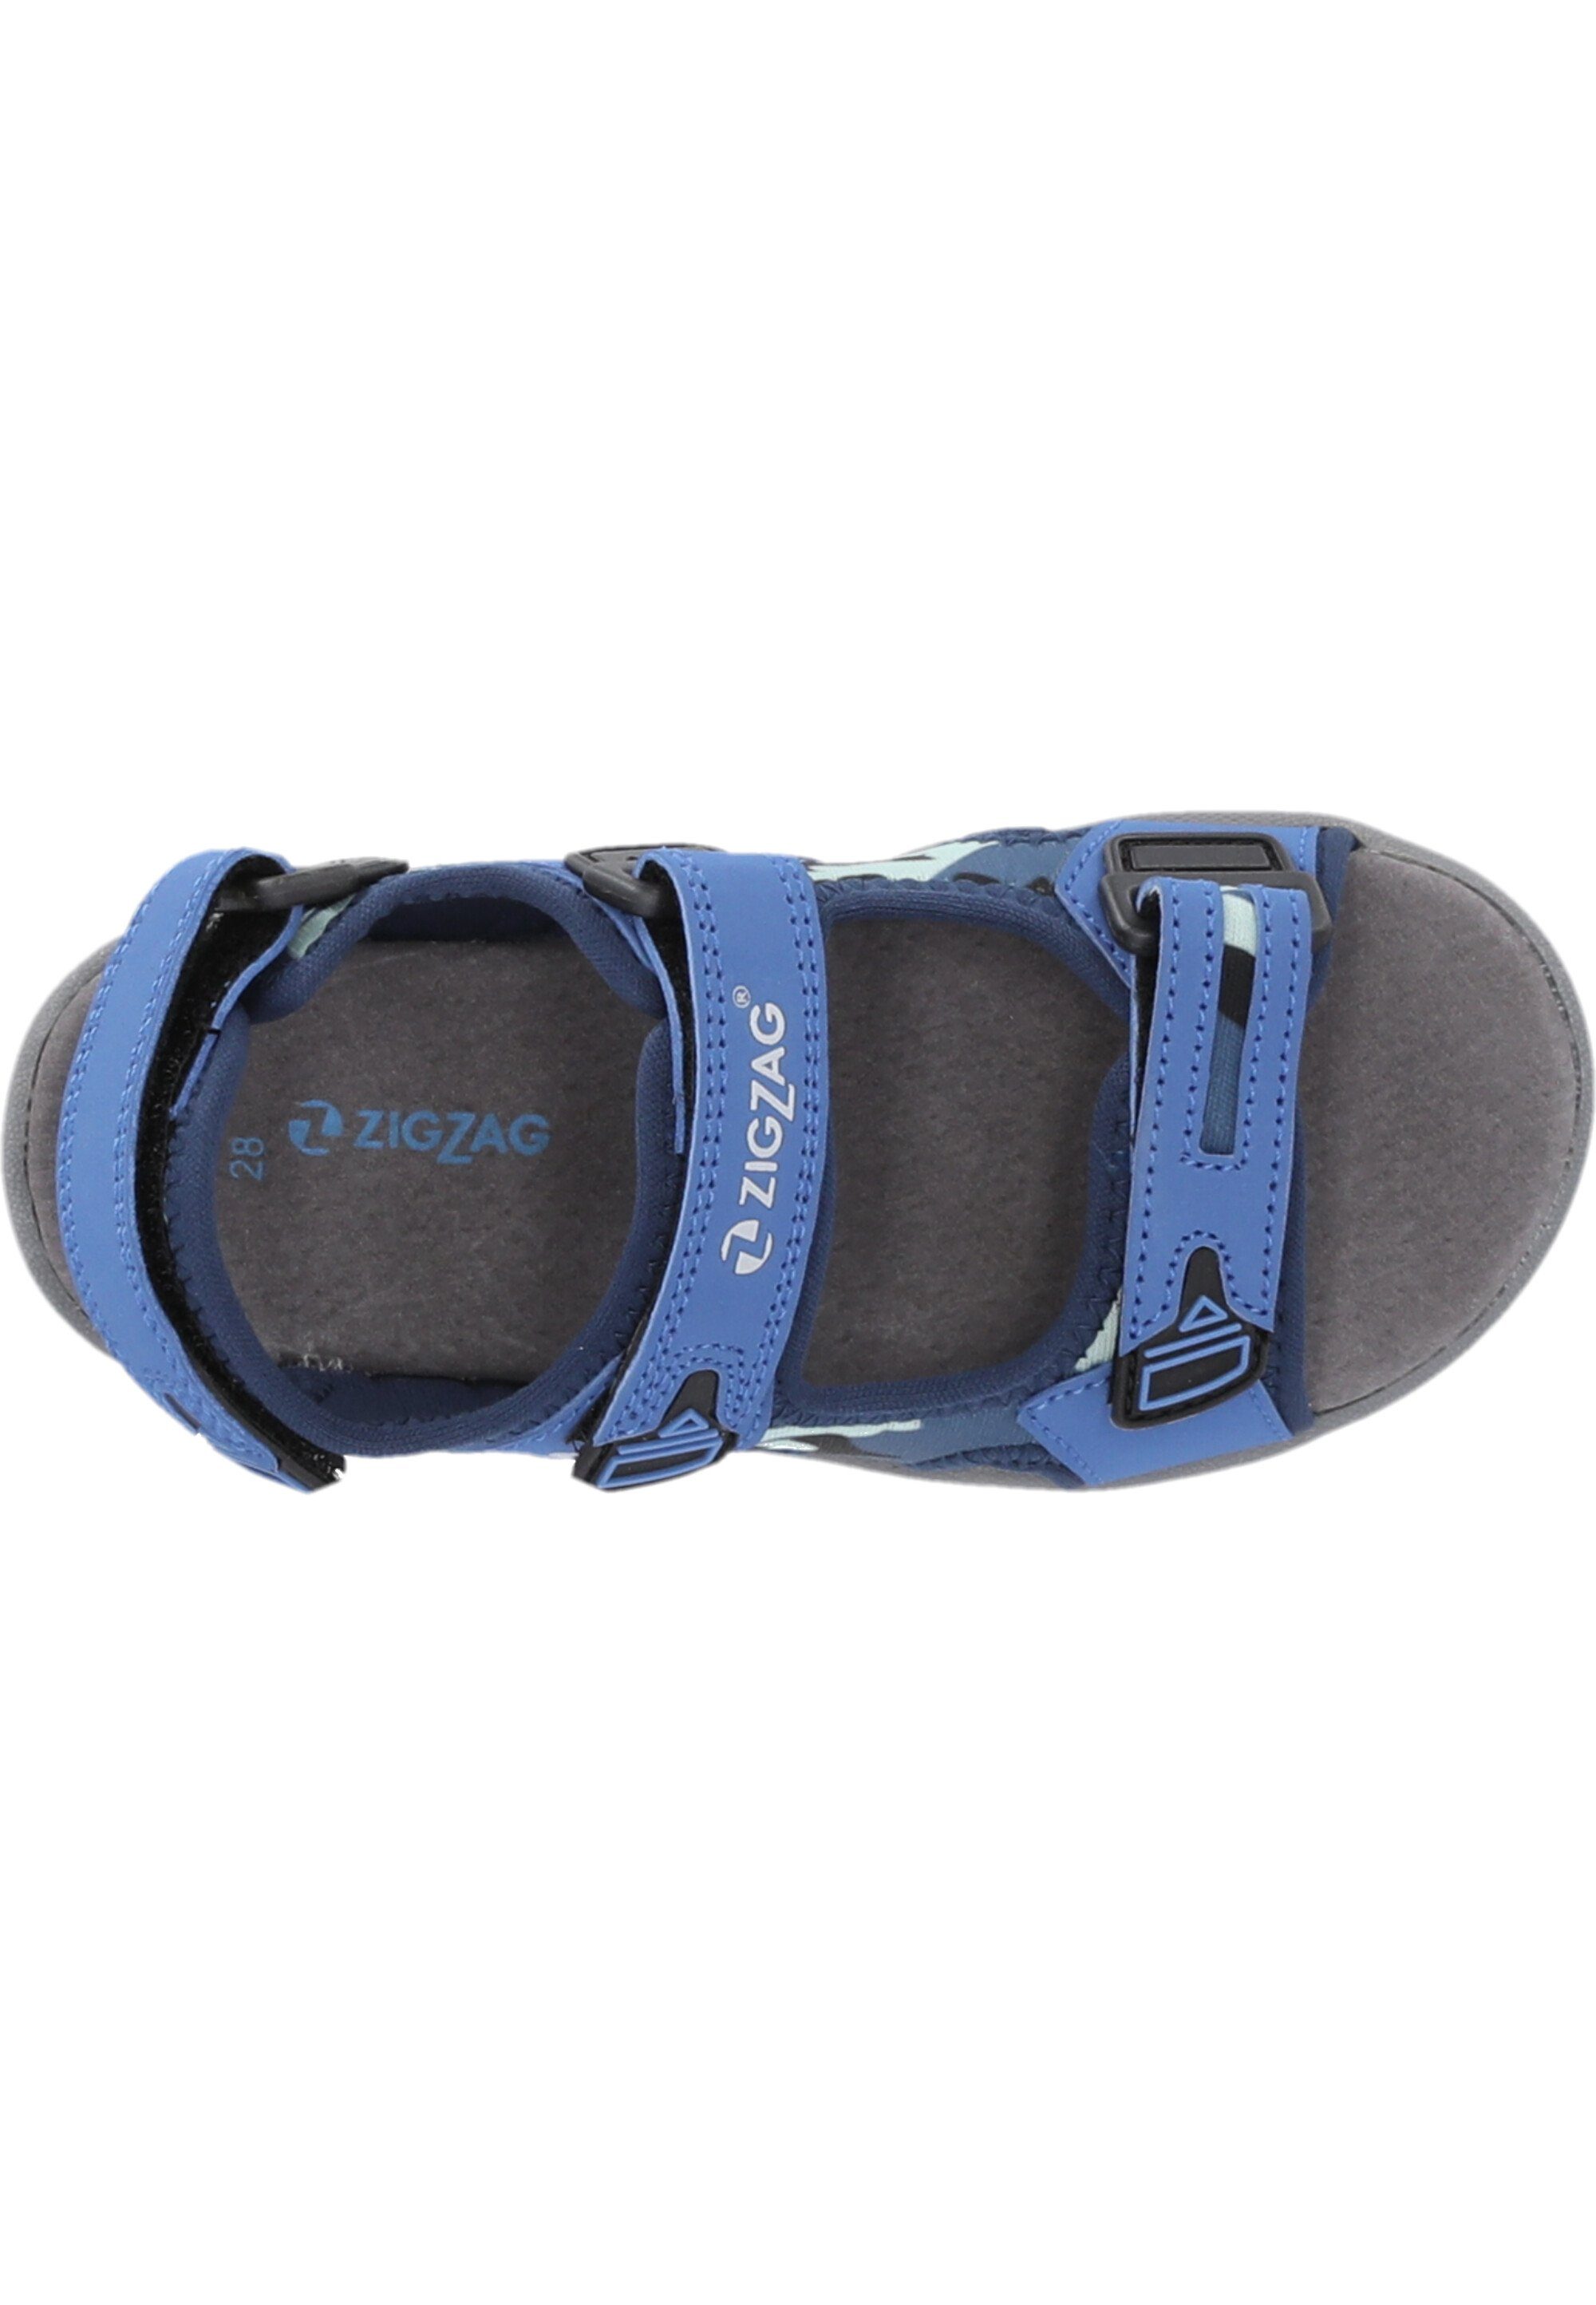 ZIGZAG mit Sandale praktischem Tanaka Klettverschluss blau-blau